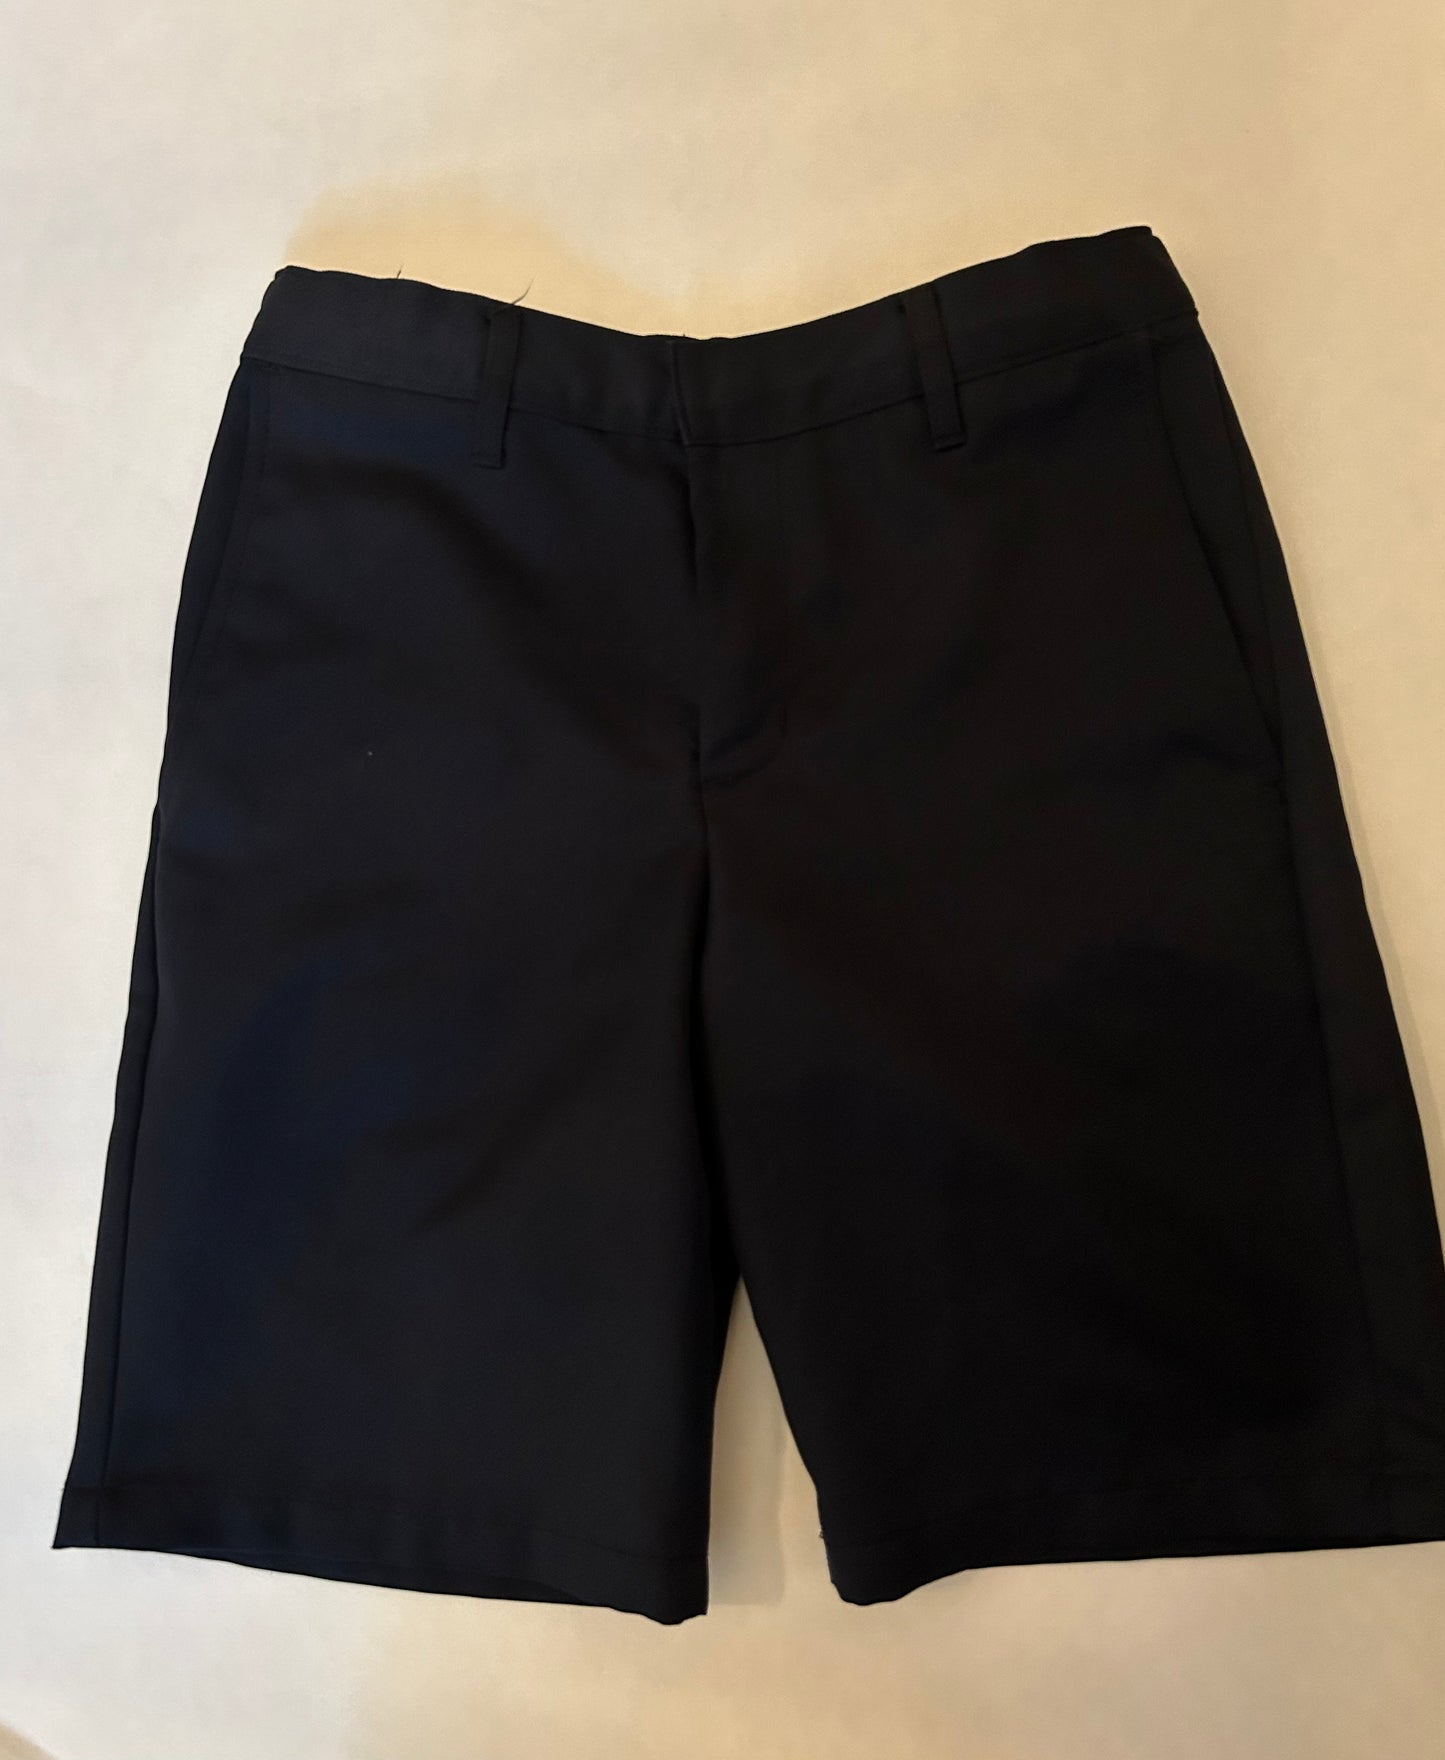 Boys size 12 off brand Navy shorts